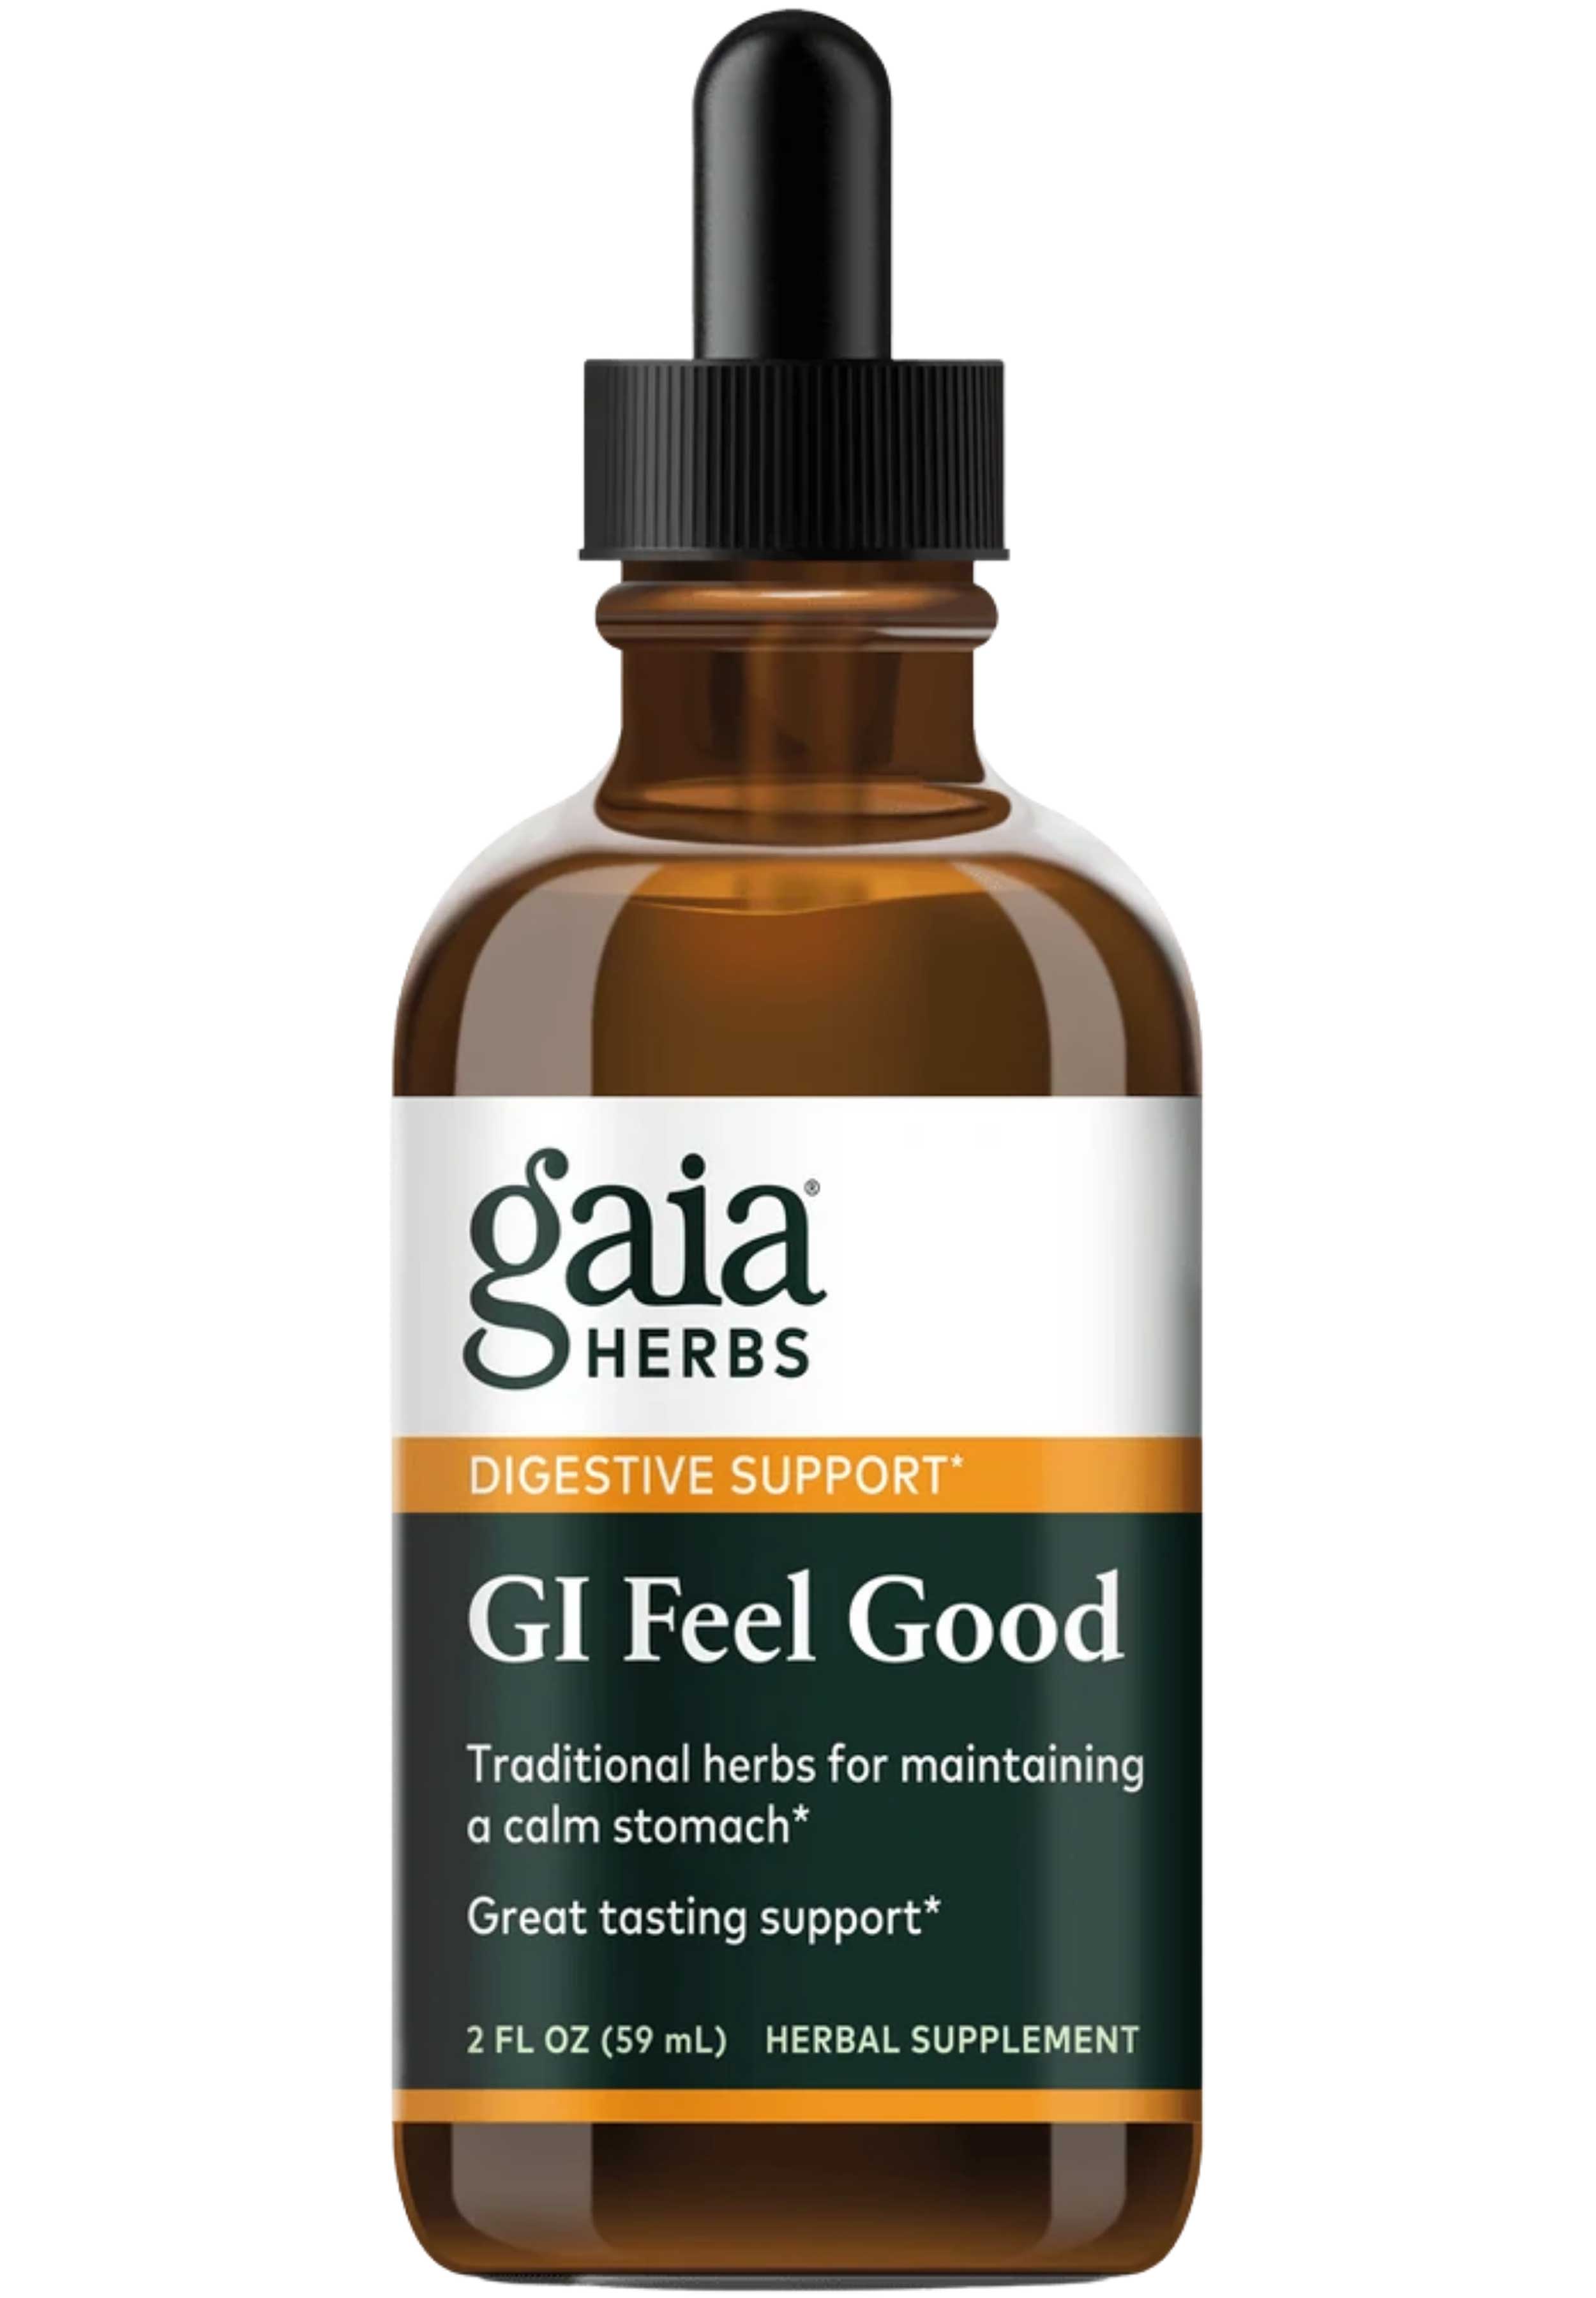 Gaia Herbs GI Feel Good